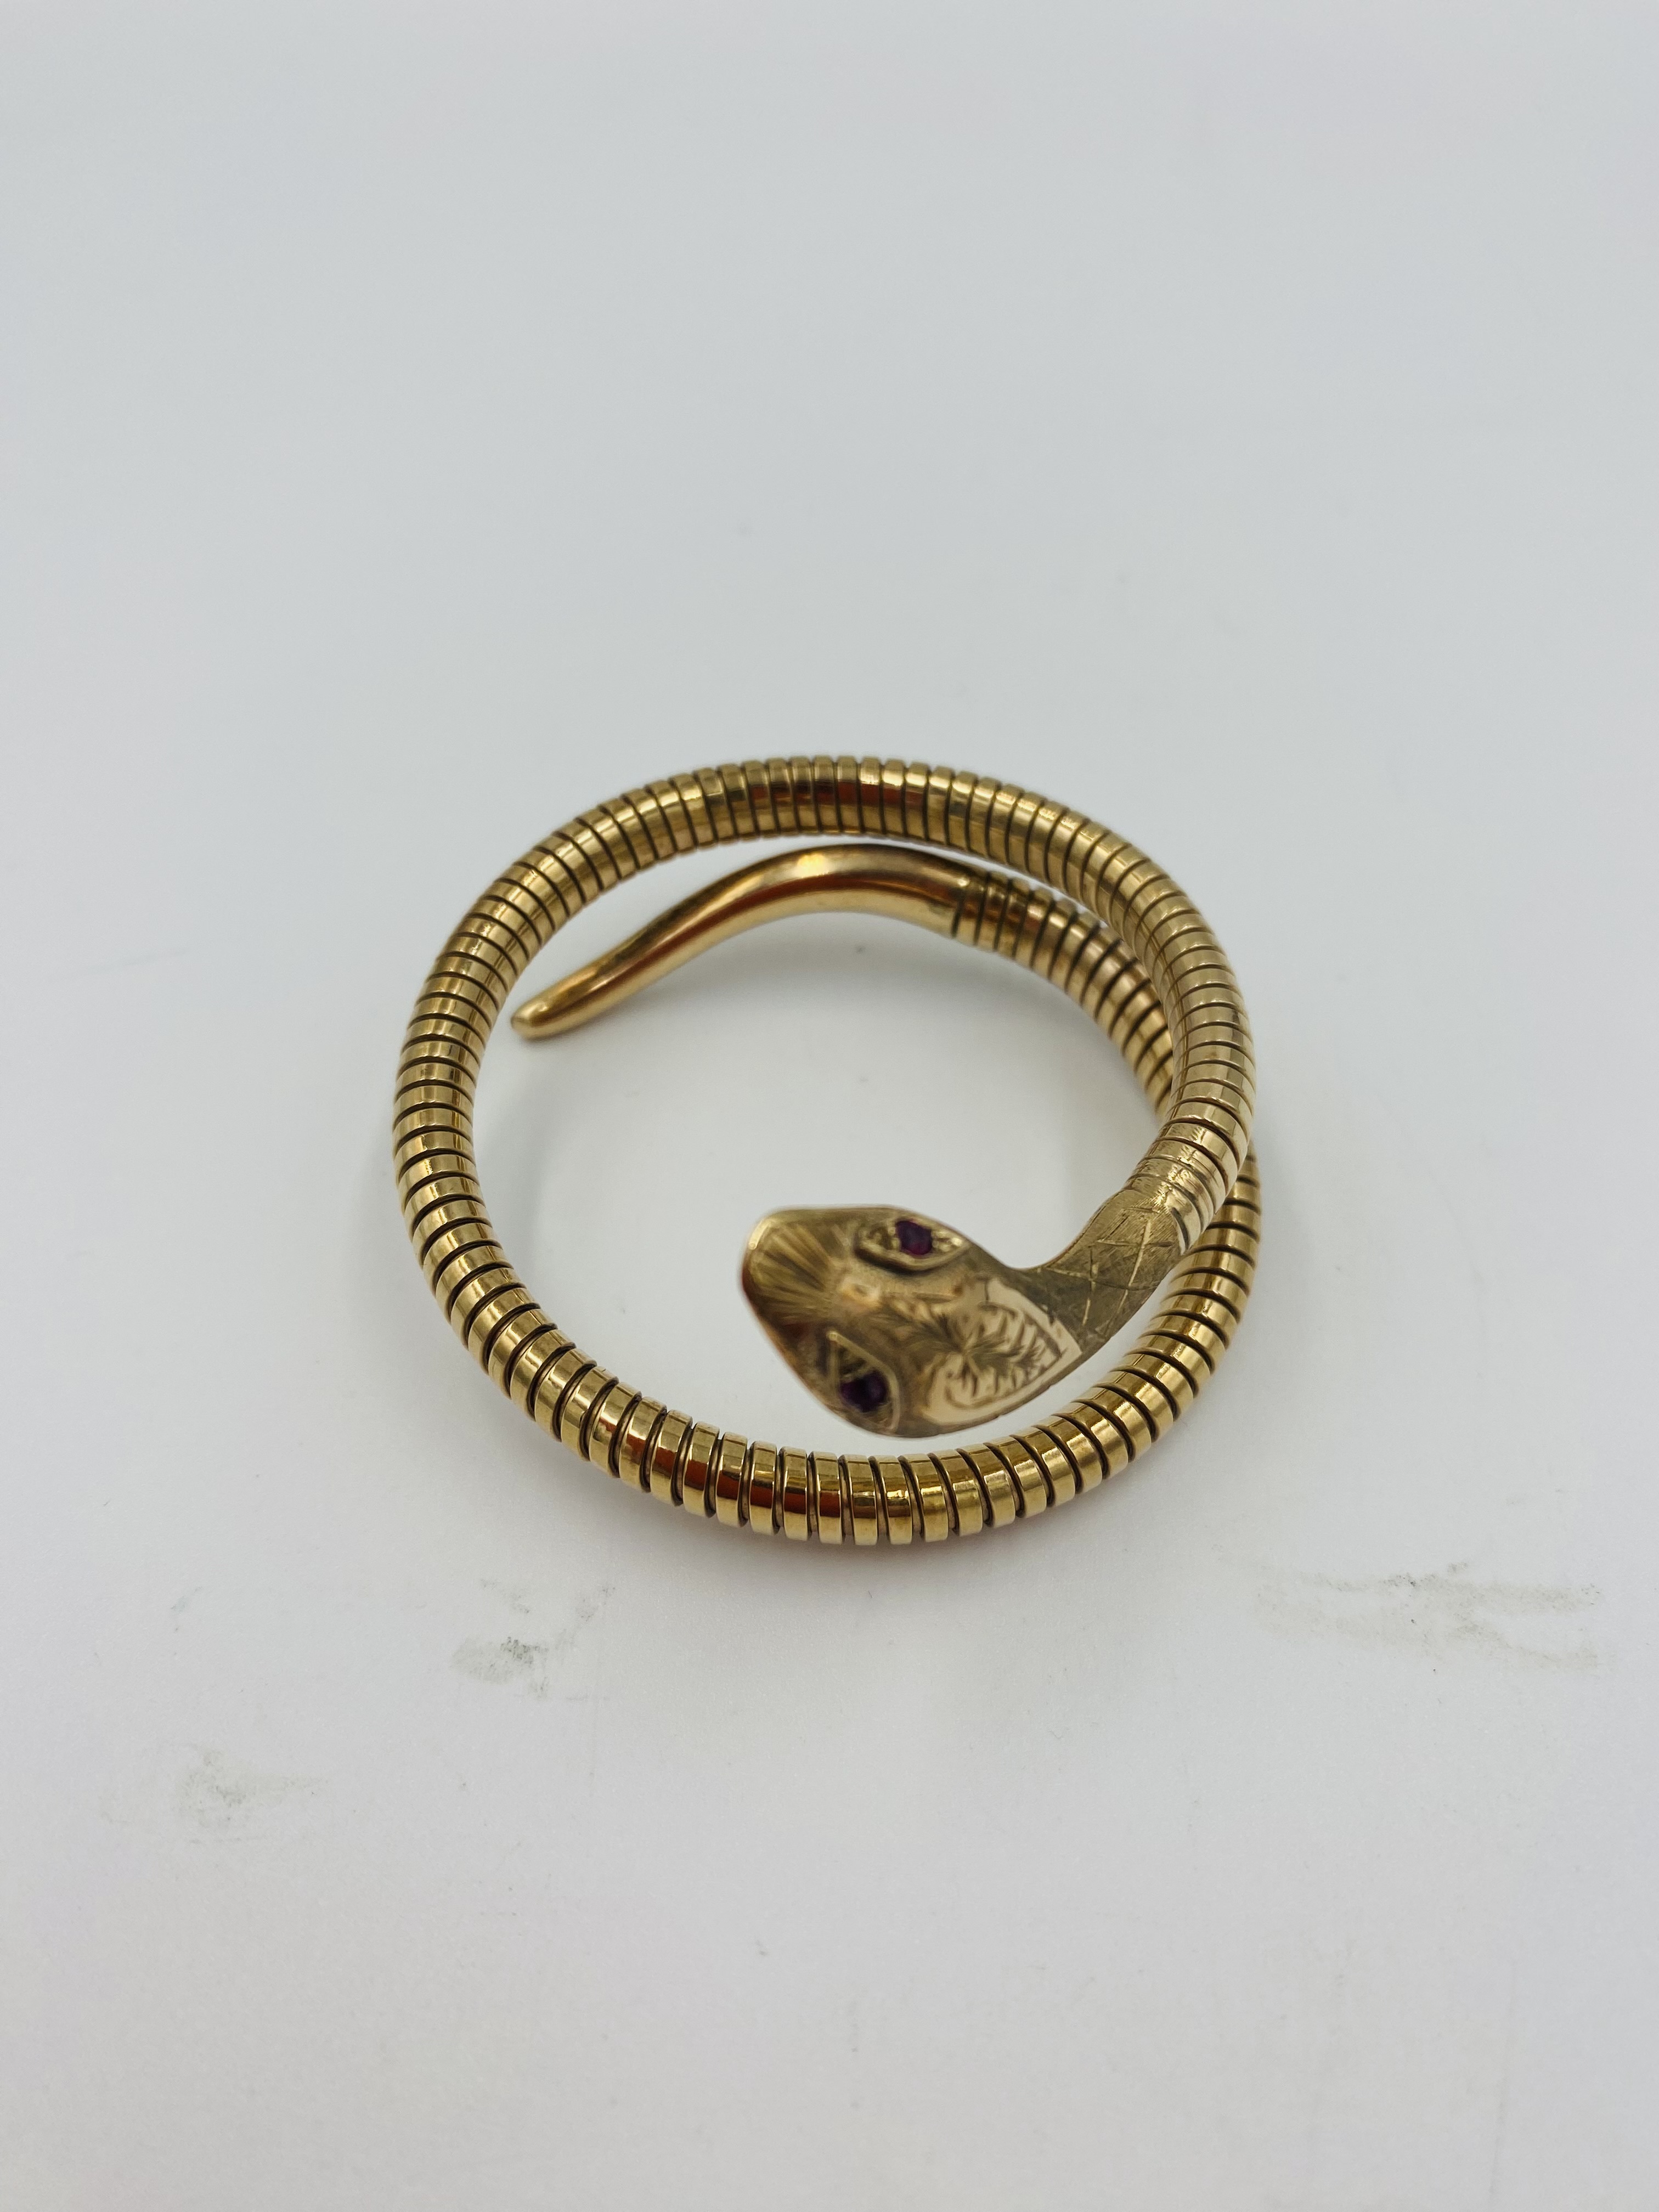 9ct gold, steel sprung snake bracelet - Image 5 of 5